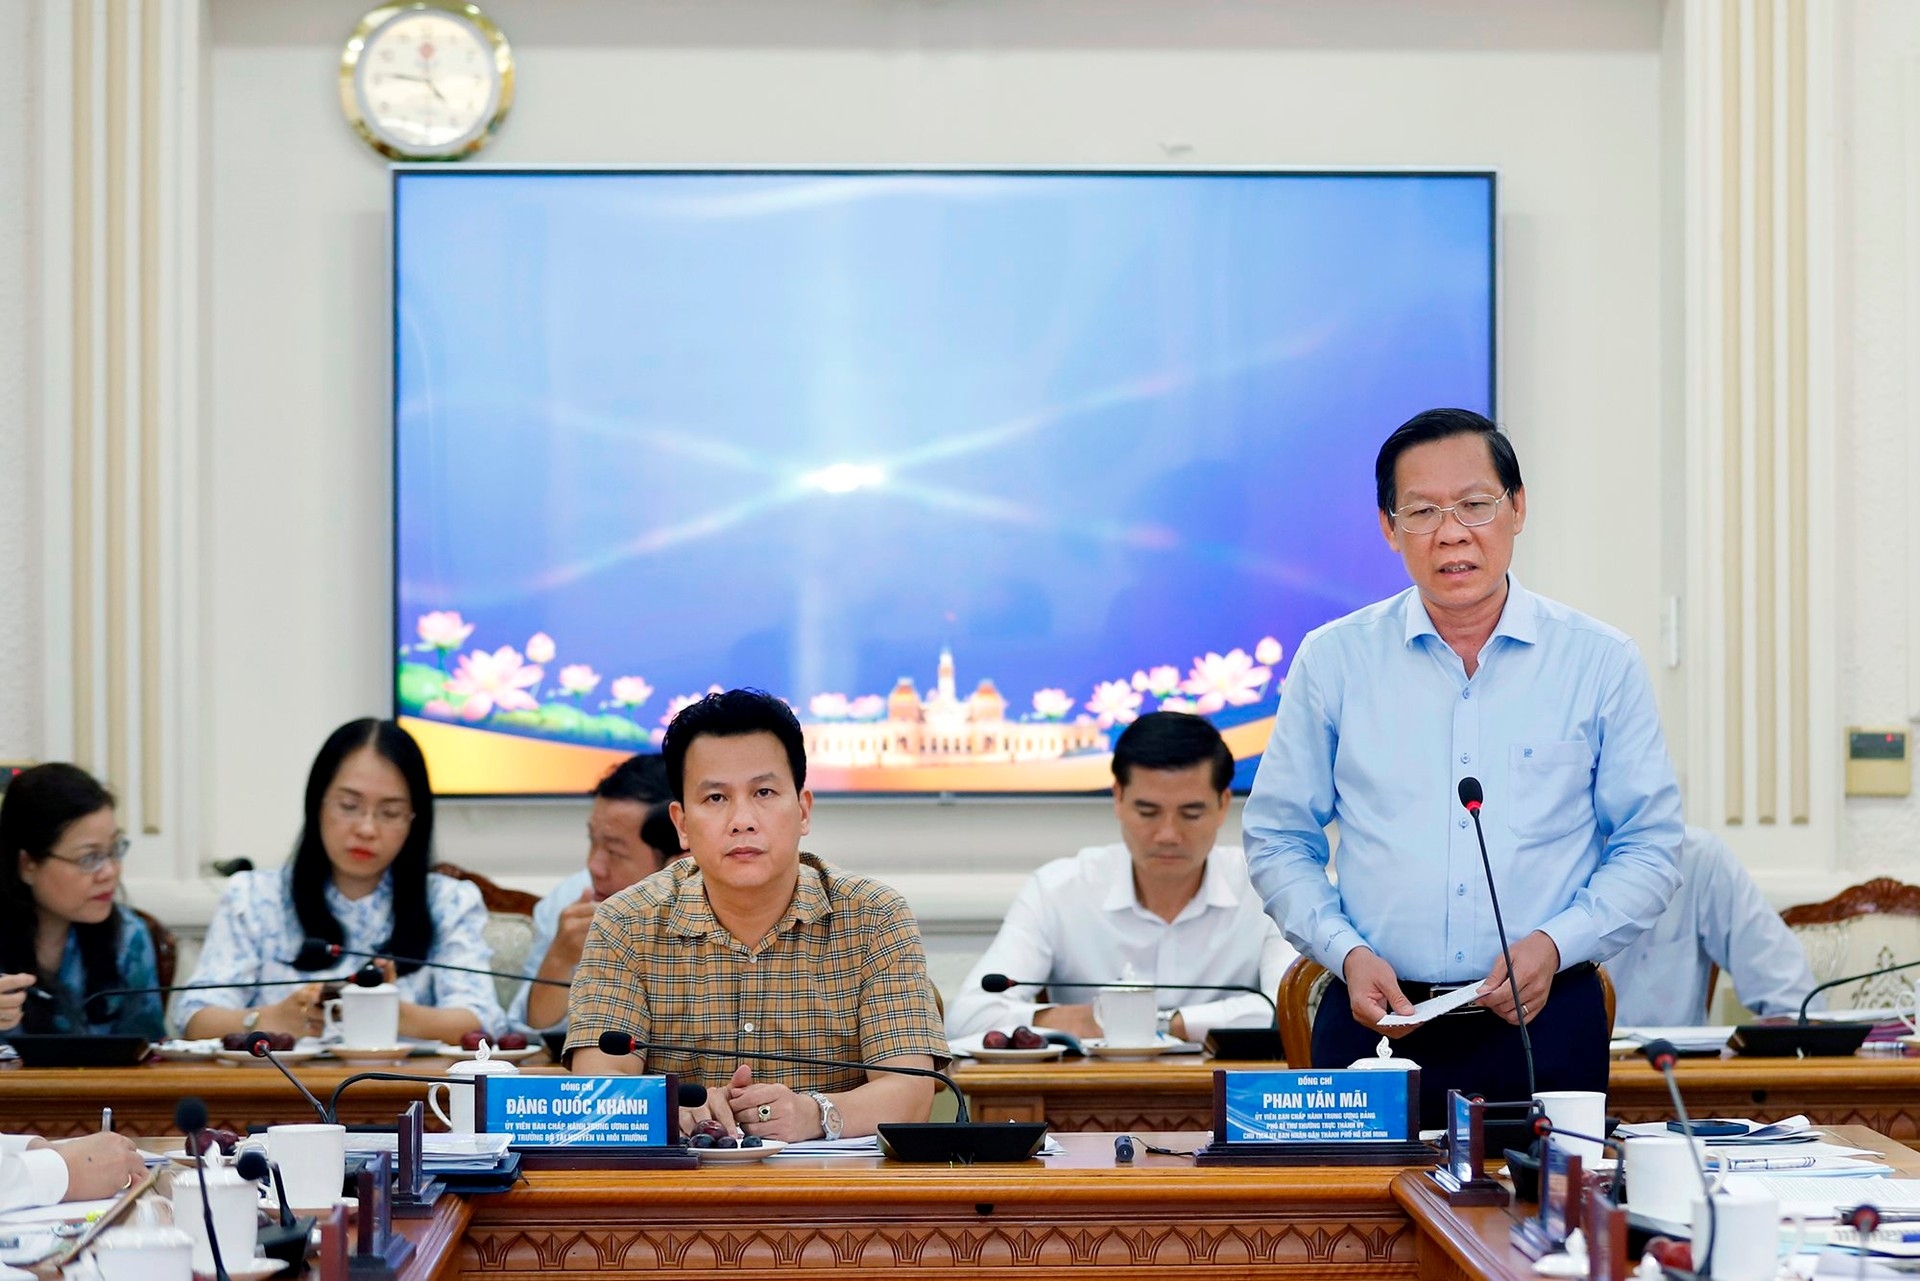  Chủ tịch UBND TP. Hồ Chí Minh Phan Văn Mãi phát biểu tại buổi họp